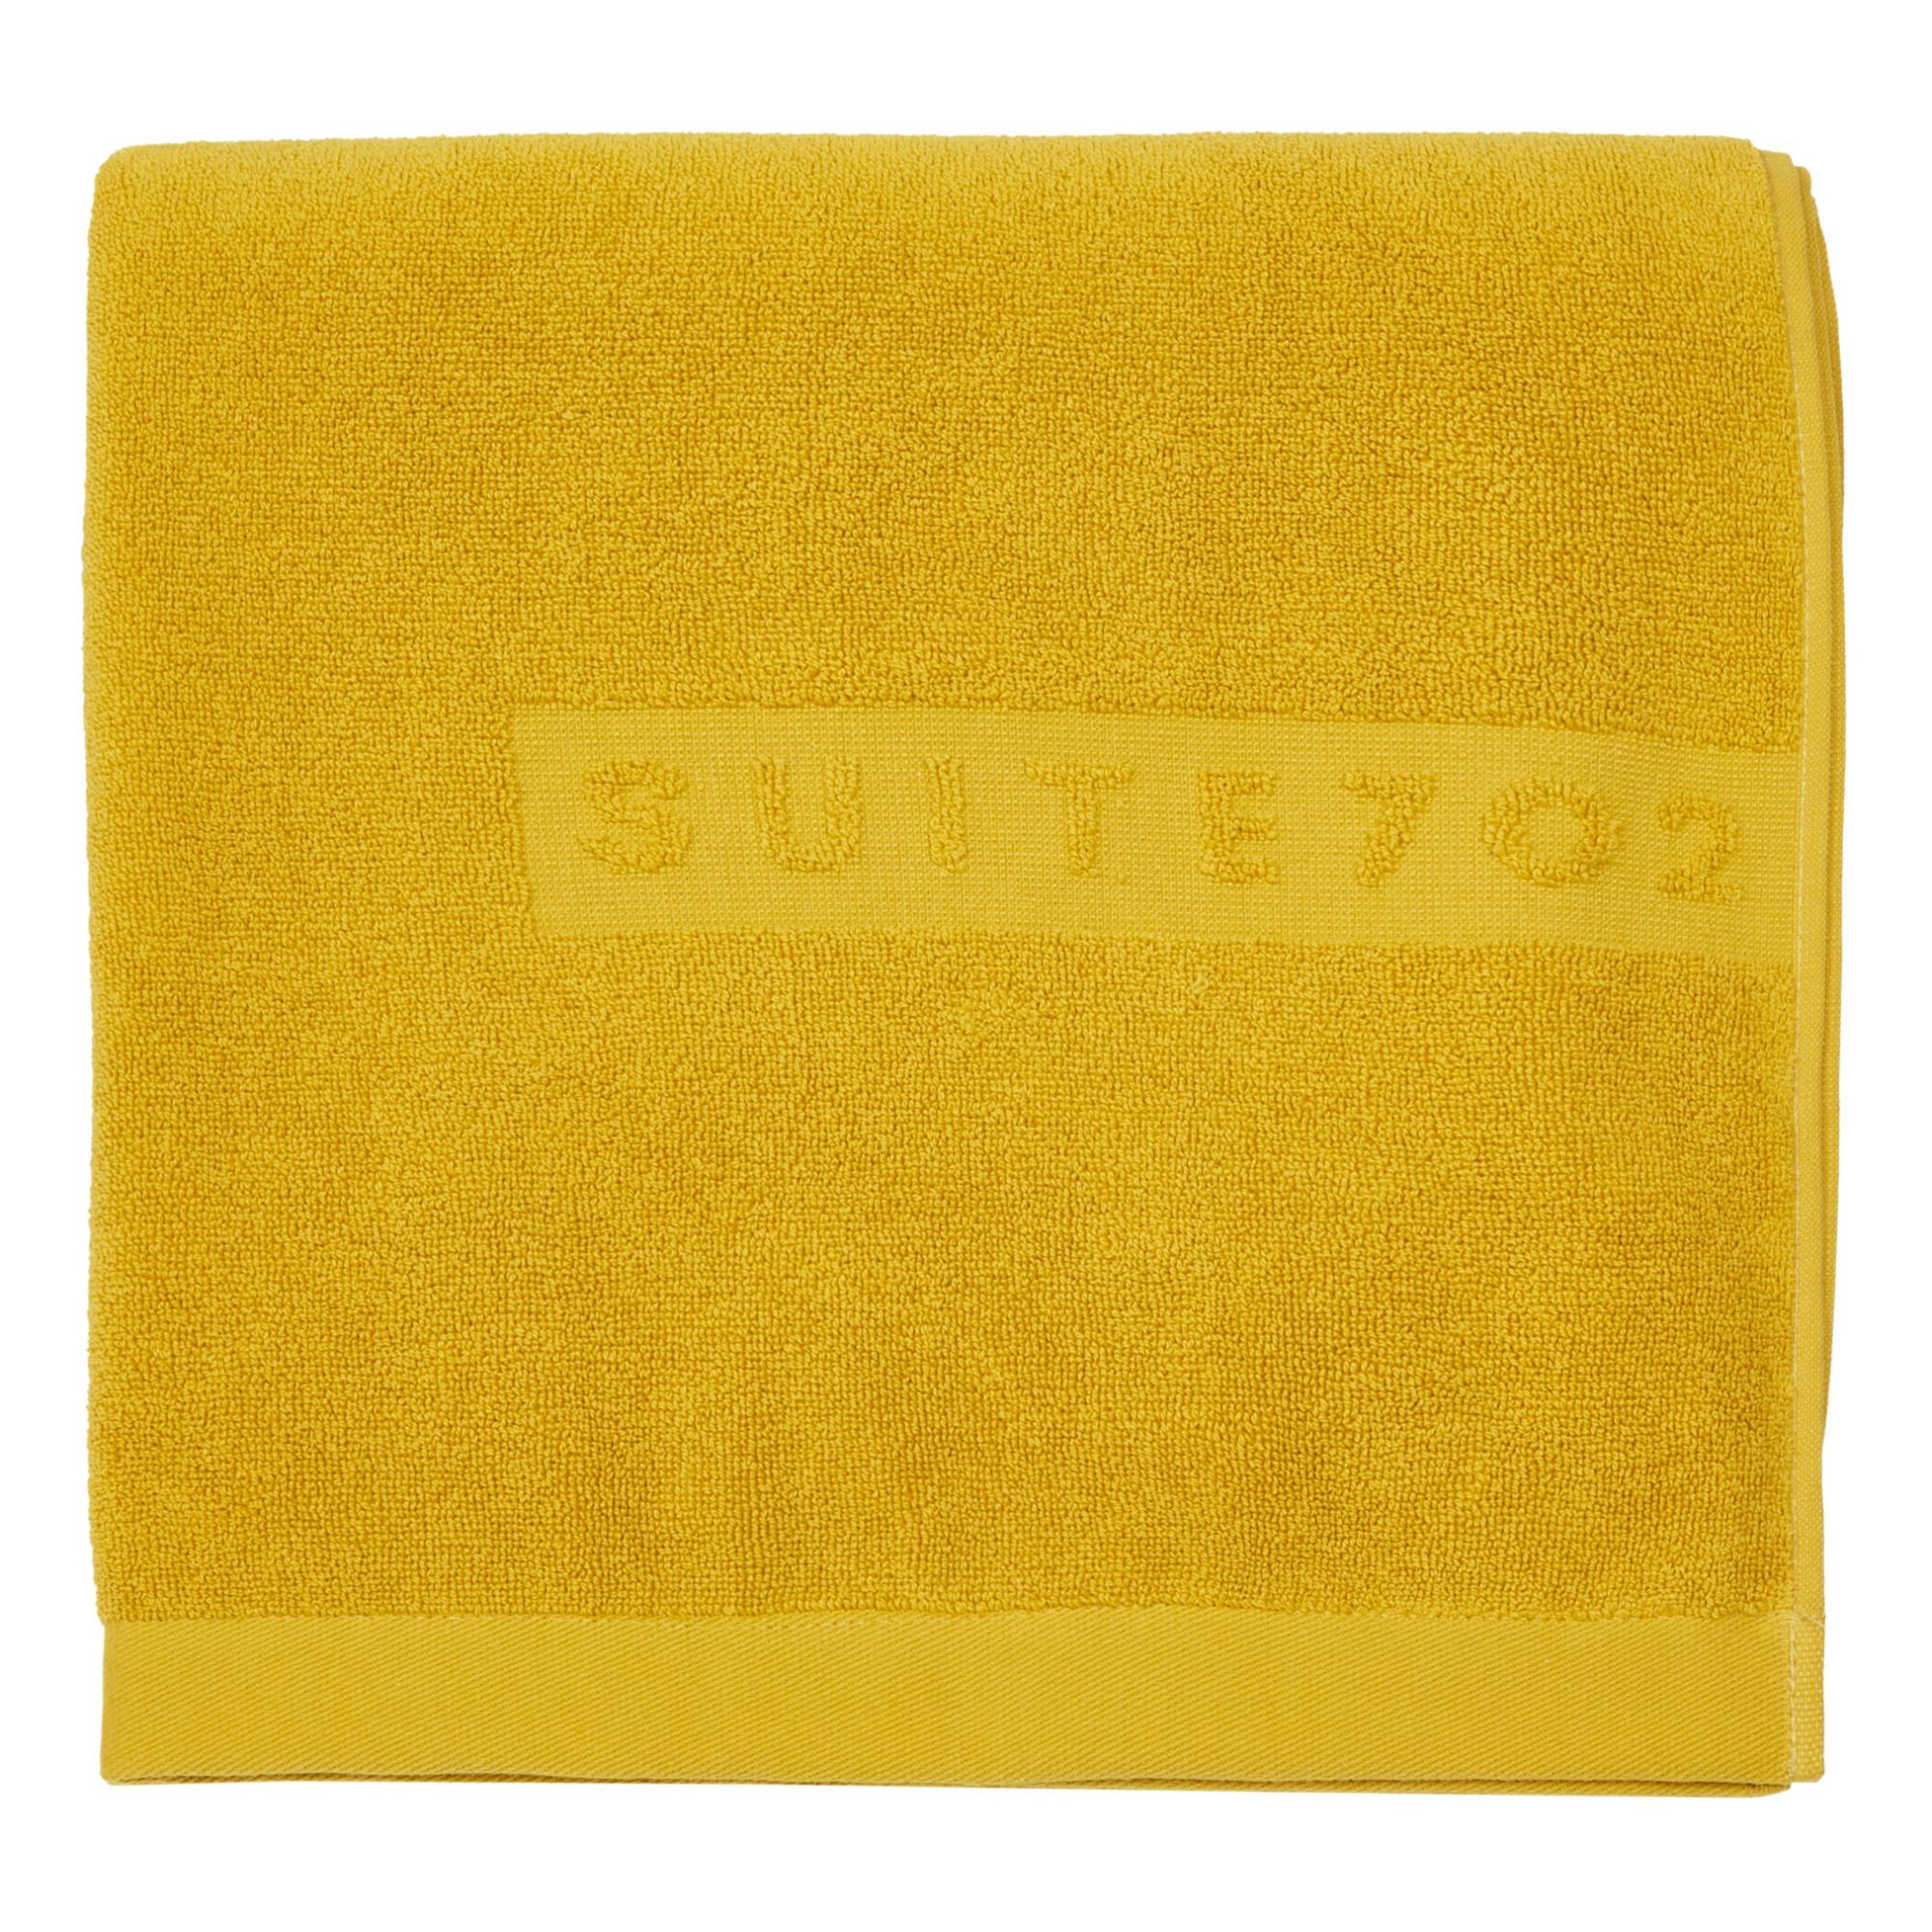 Suite 702 - Drap de bain en coton bio - Jaune moutarde